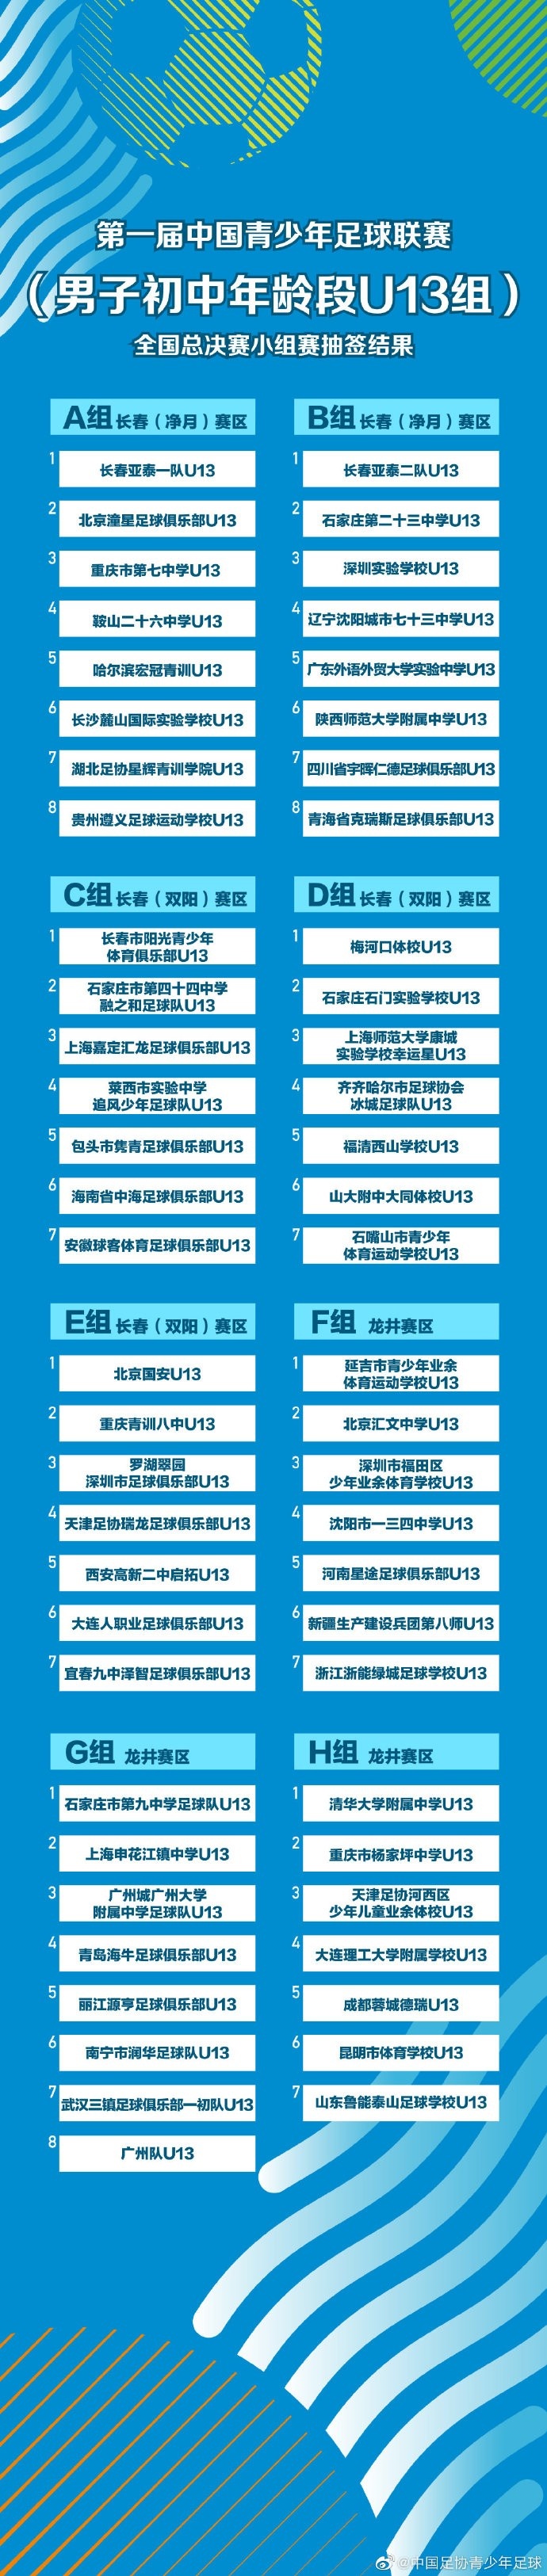 中国青少年足球联赛全国总决赛小组赛抽签结果公示